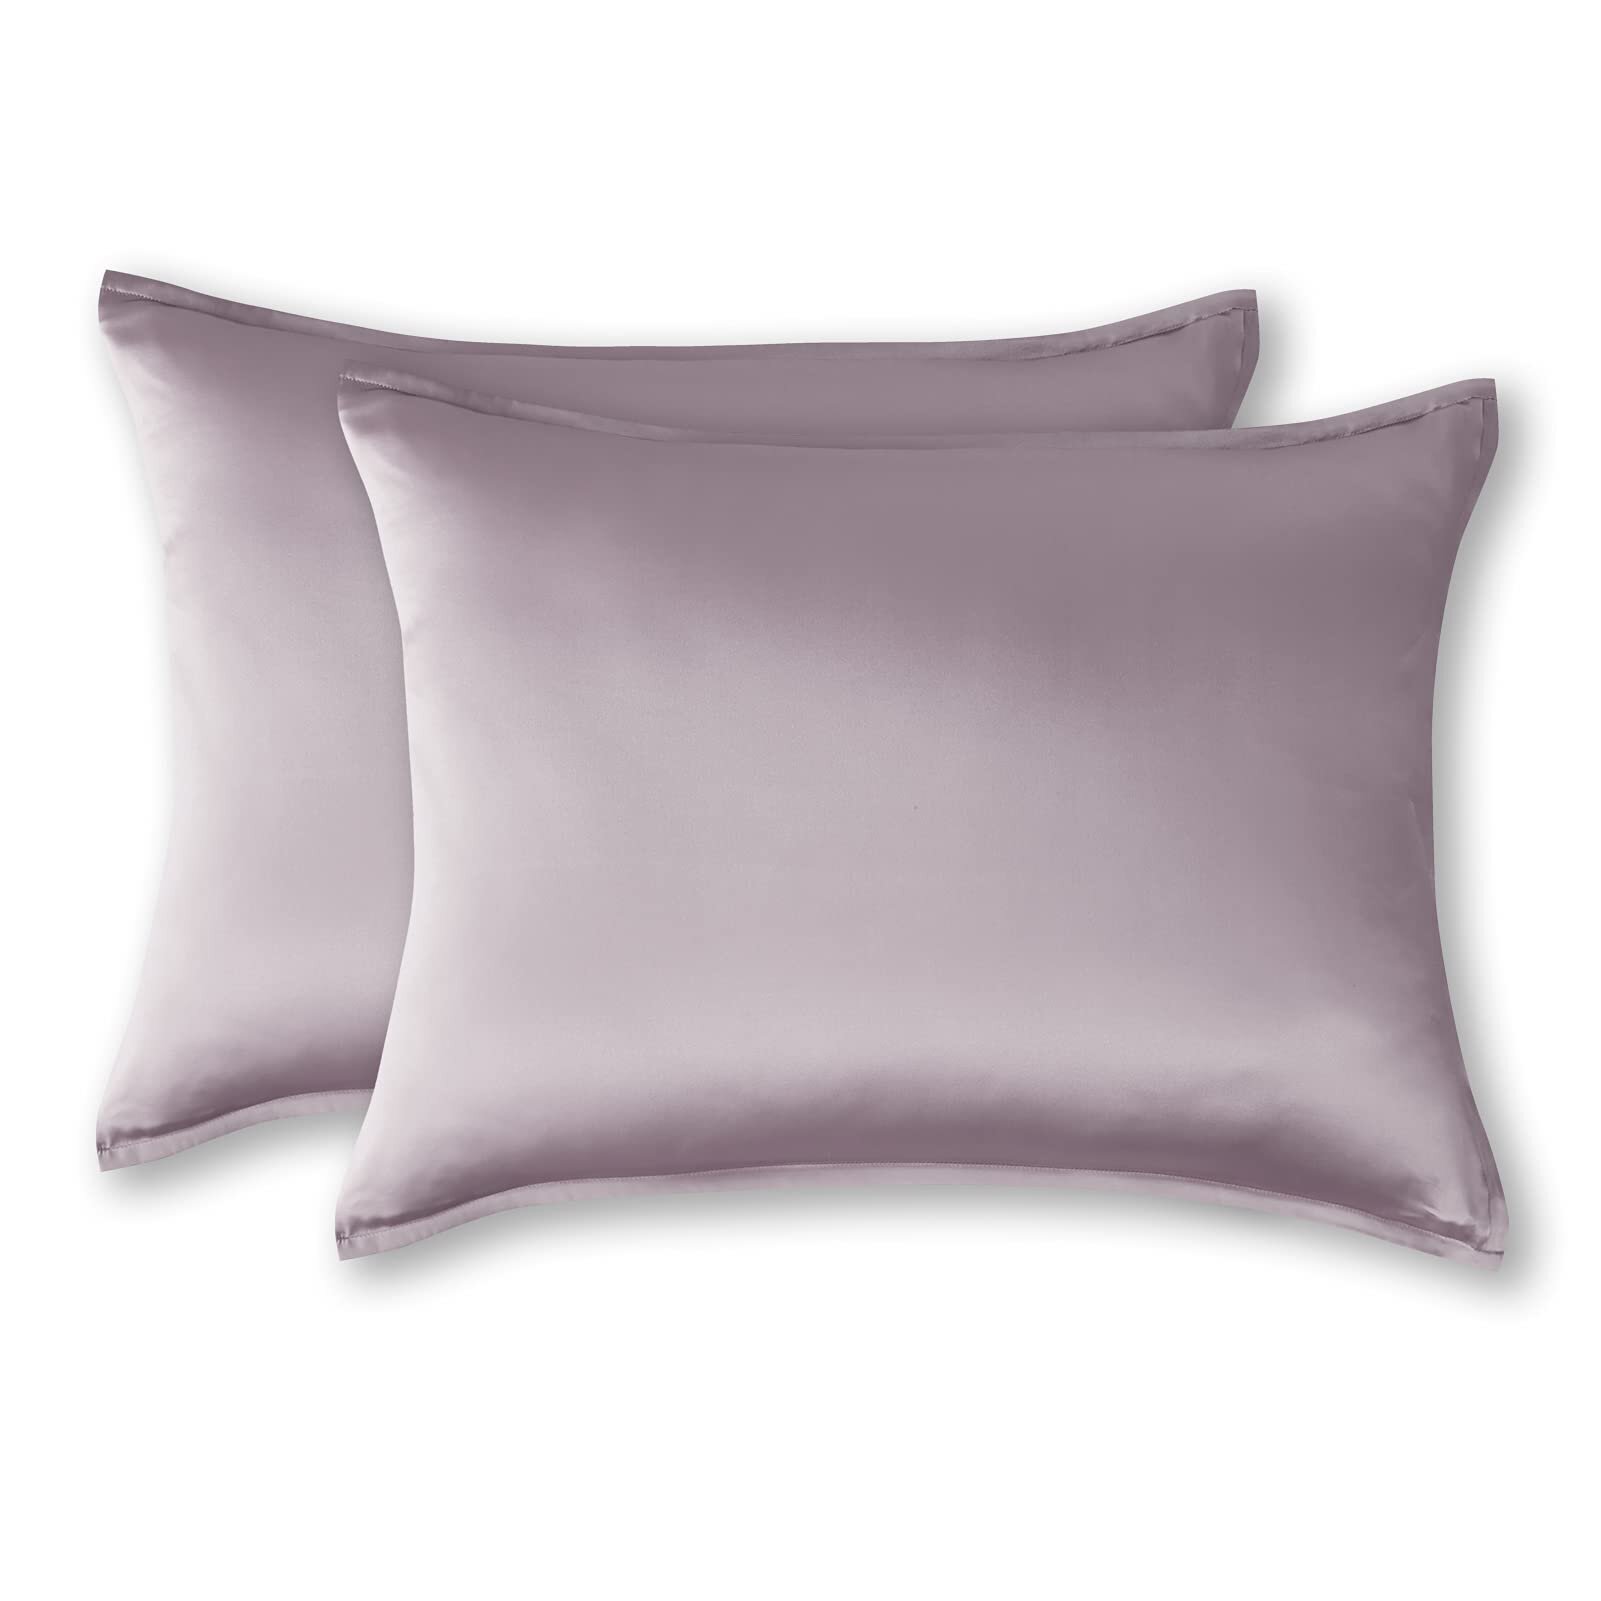 26" x 26" Pillowcase with Zip Pillow White 100% Cotton Pillowcase for 65x65cm 